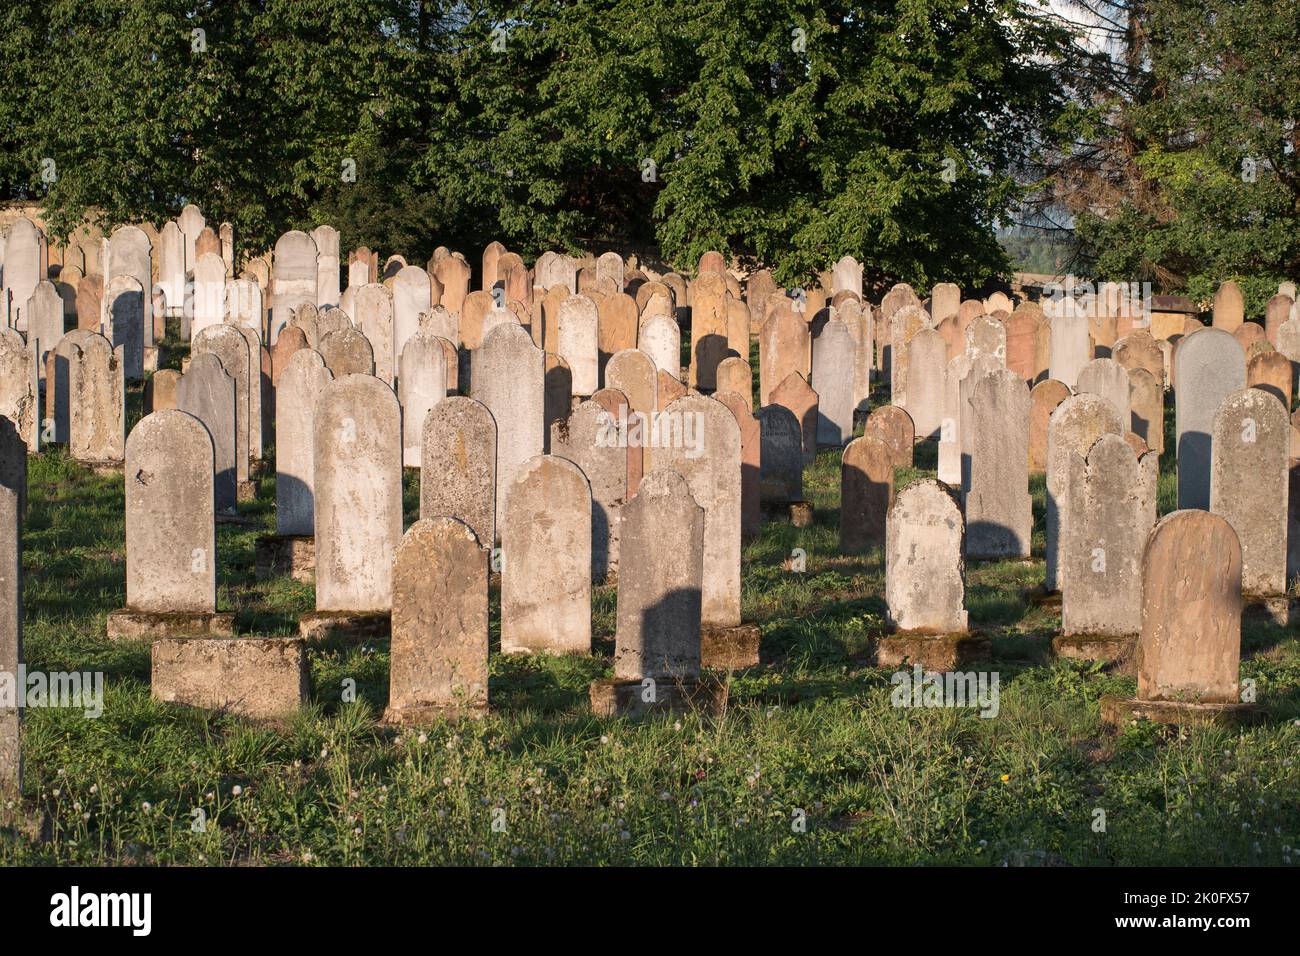 Bardejov, Eslovaquia. Histórico cementerio judío del siglo 18th al 20th. Las filas de tumbas están separadas para hombres y mujeres. Las lápidas. Foto de stock